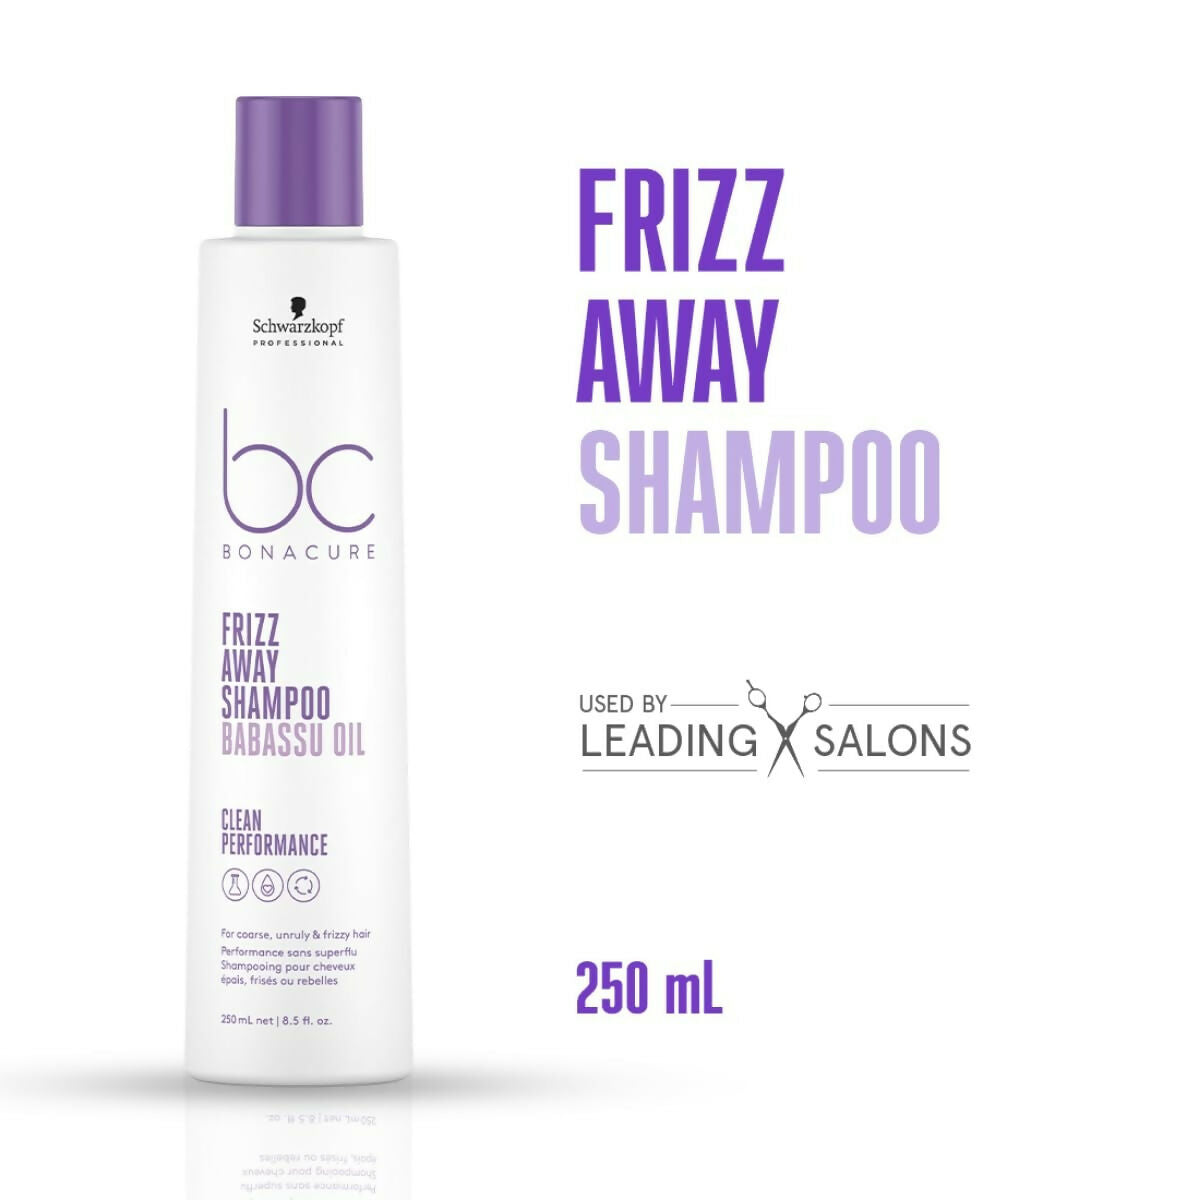 Schwarzkopf Professional Bonacure Frizz Away Shampoo With Babassu Oil - Distacart